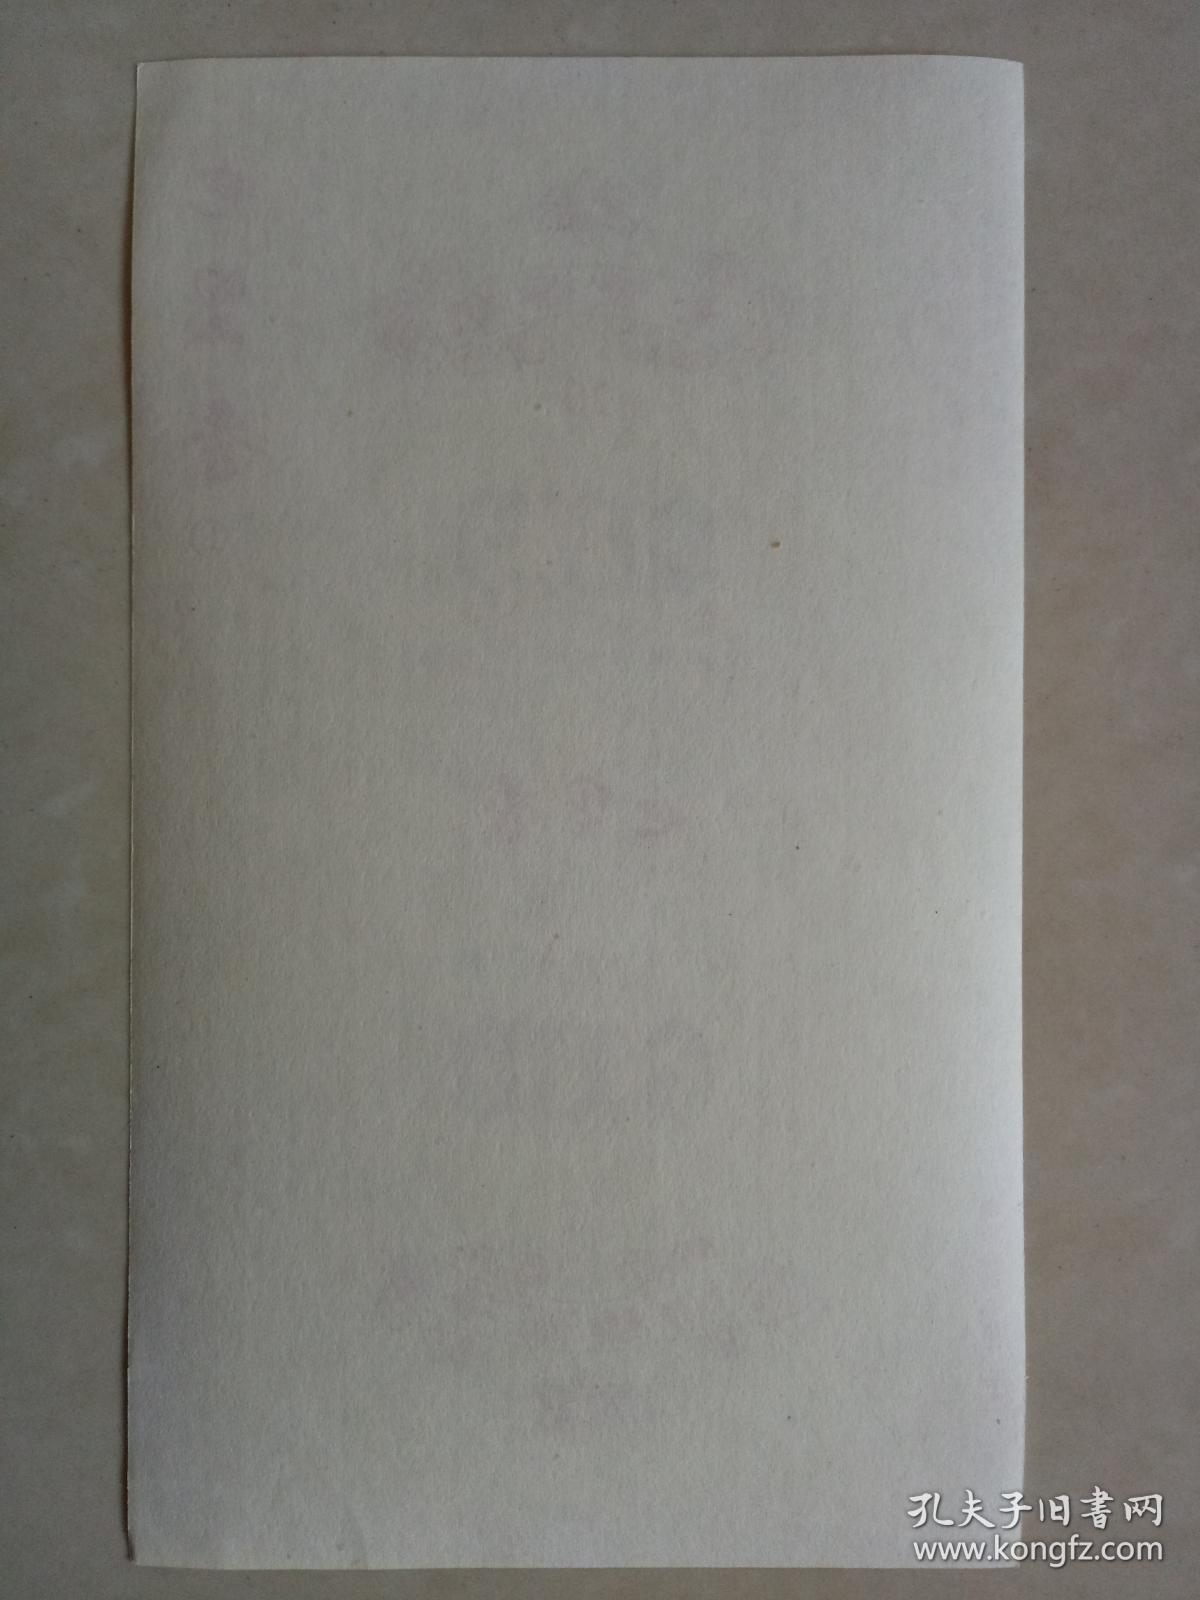 【烟标】七里香（中国襄樊卷烟厂） 70s印刷标  警句标